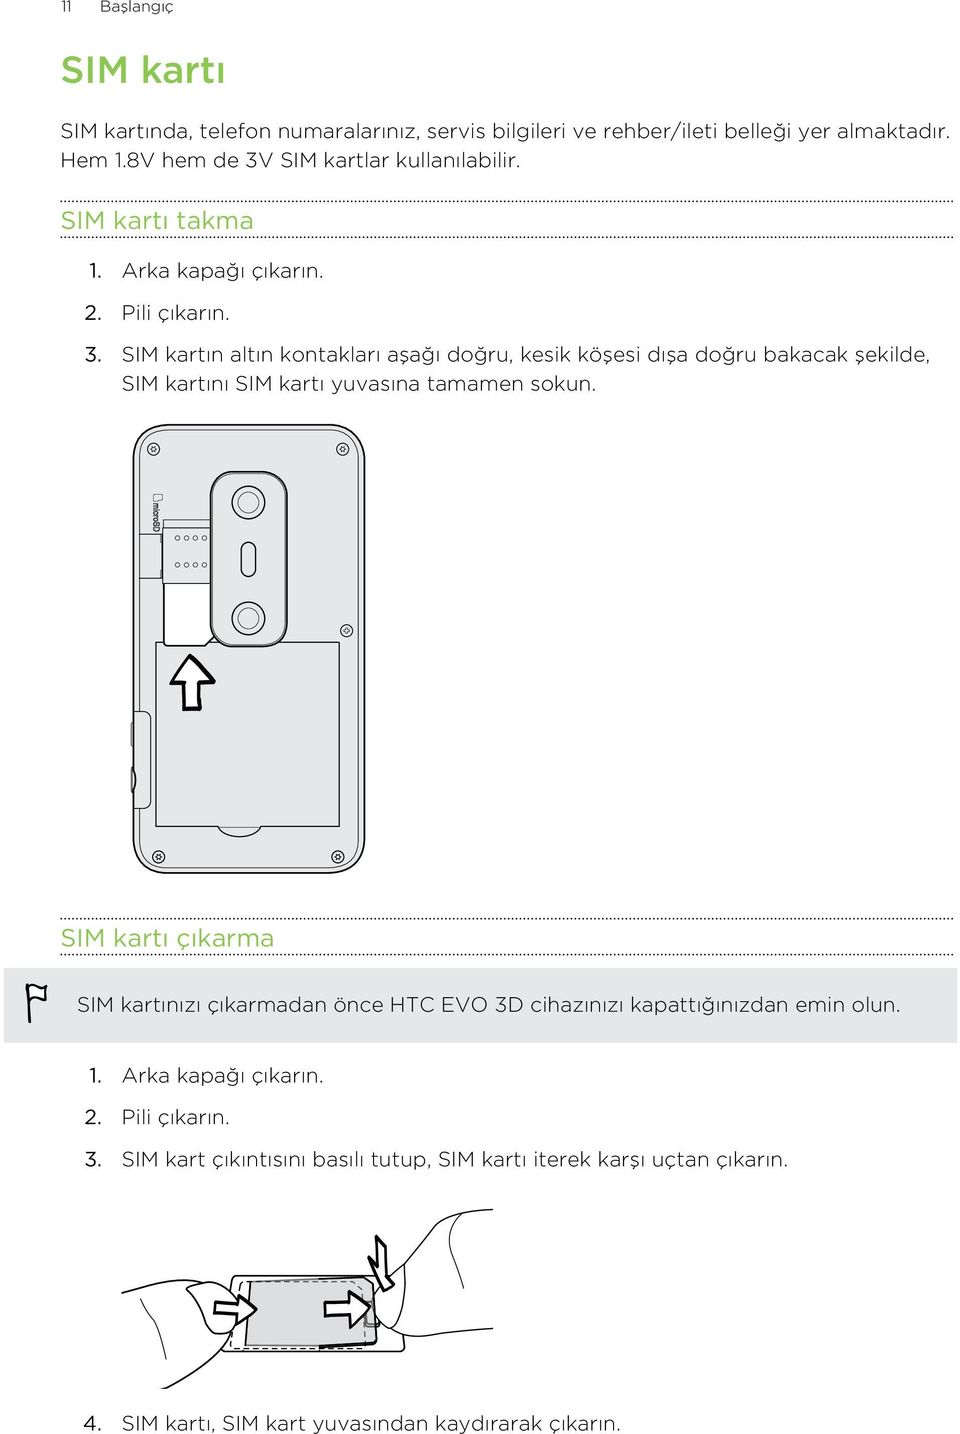 SIM kartı çıkarma SIM kartınızı çıkarmadan önce HTC EVO 3D cihazınızı kapattığınızdan emin olun. 1. Arka kapağı çıkarın. 2. Pili çıkarın. 3. SIM kart çıkıntısını basılı tutup, SIM kartı iterek karşı uçtan çıkarın.